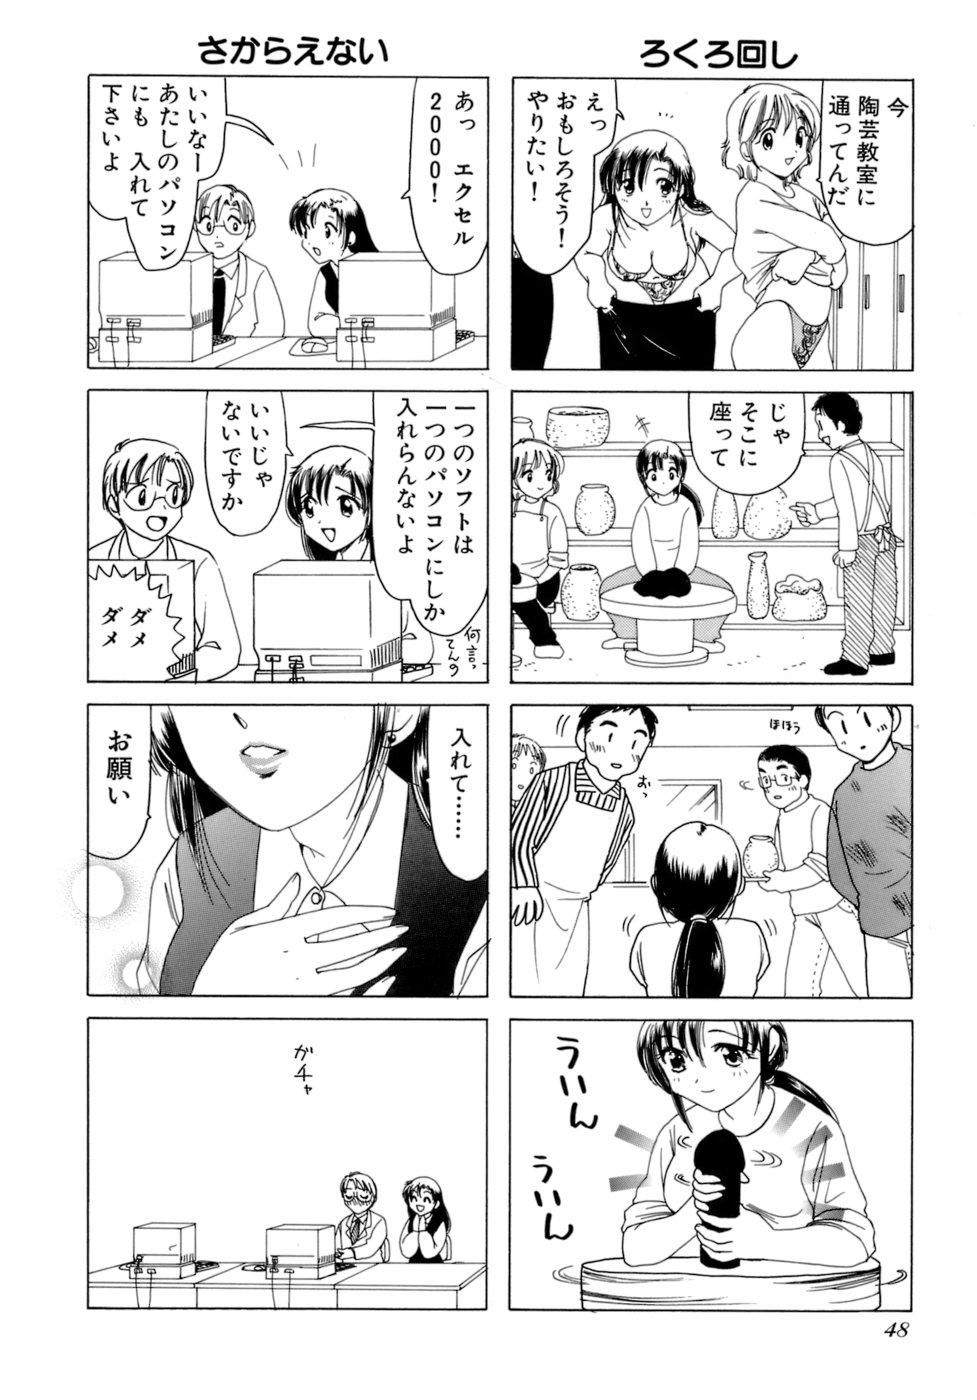 Eriko-kun, Ocha!! Vol.02 50